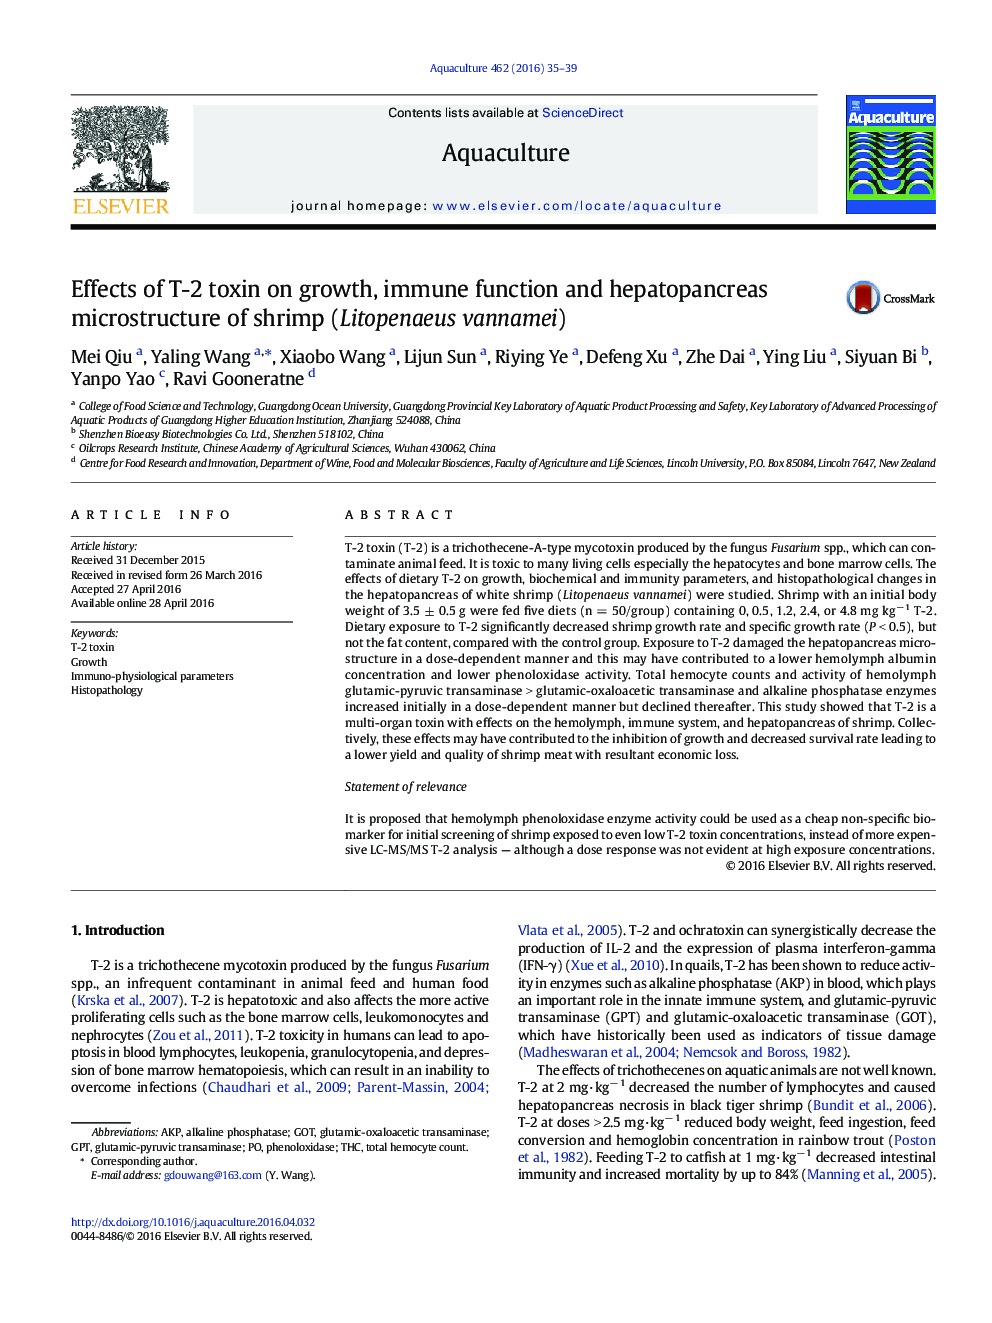 اثر توکسین T-2 بر رشد، عملکرد ایمنی و ریز ساختار هپاتوپانکراس میگو (Litopenaeus vannamei)